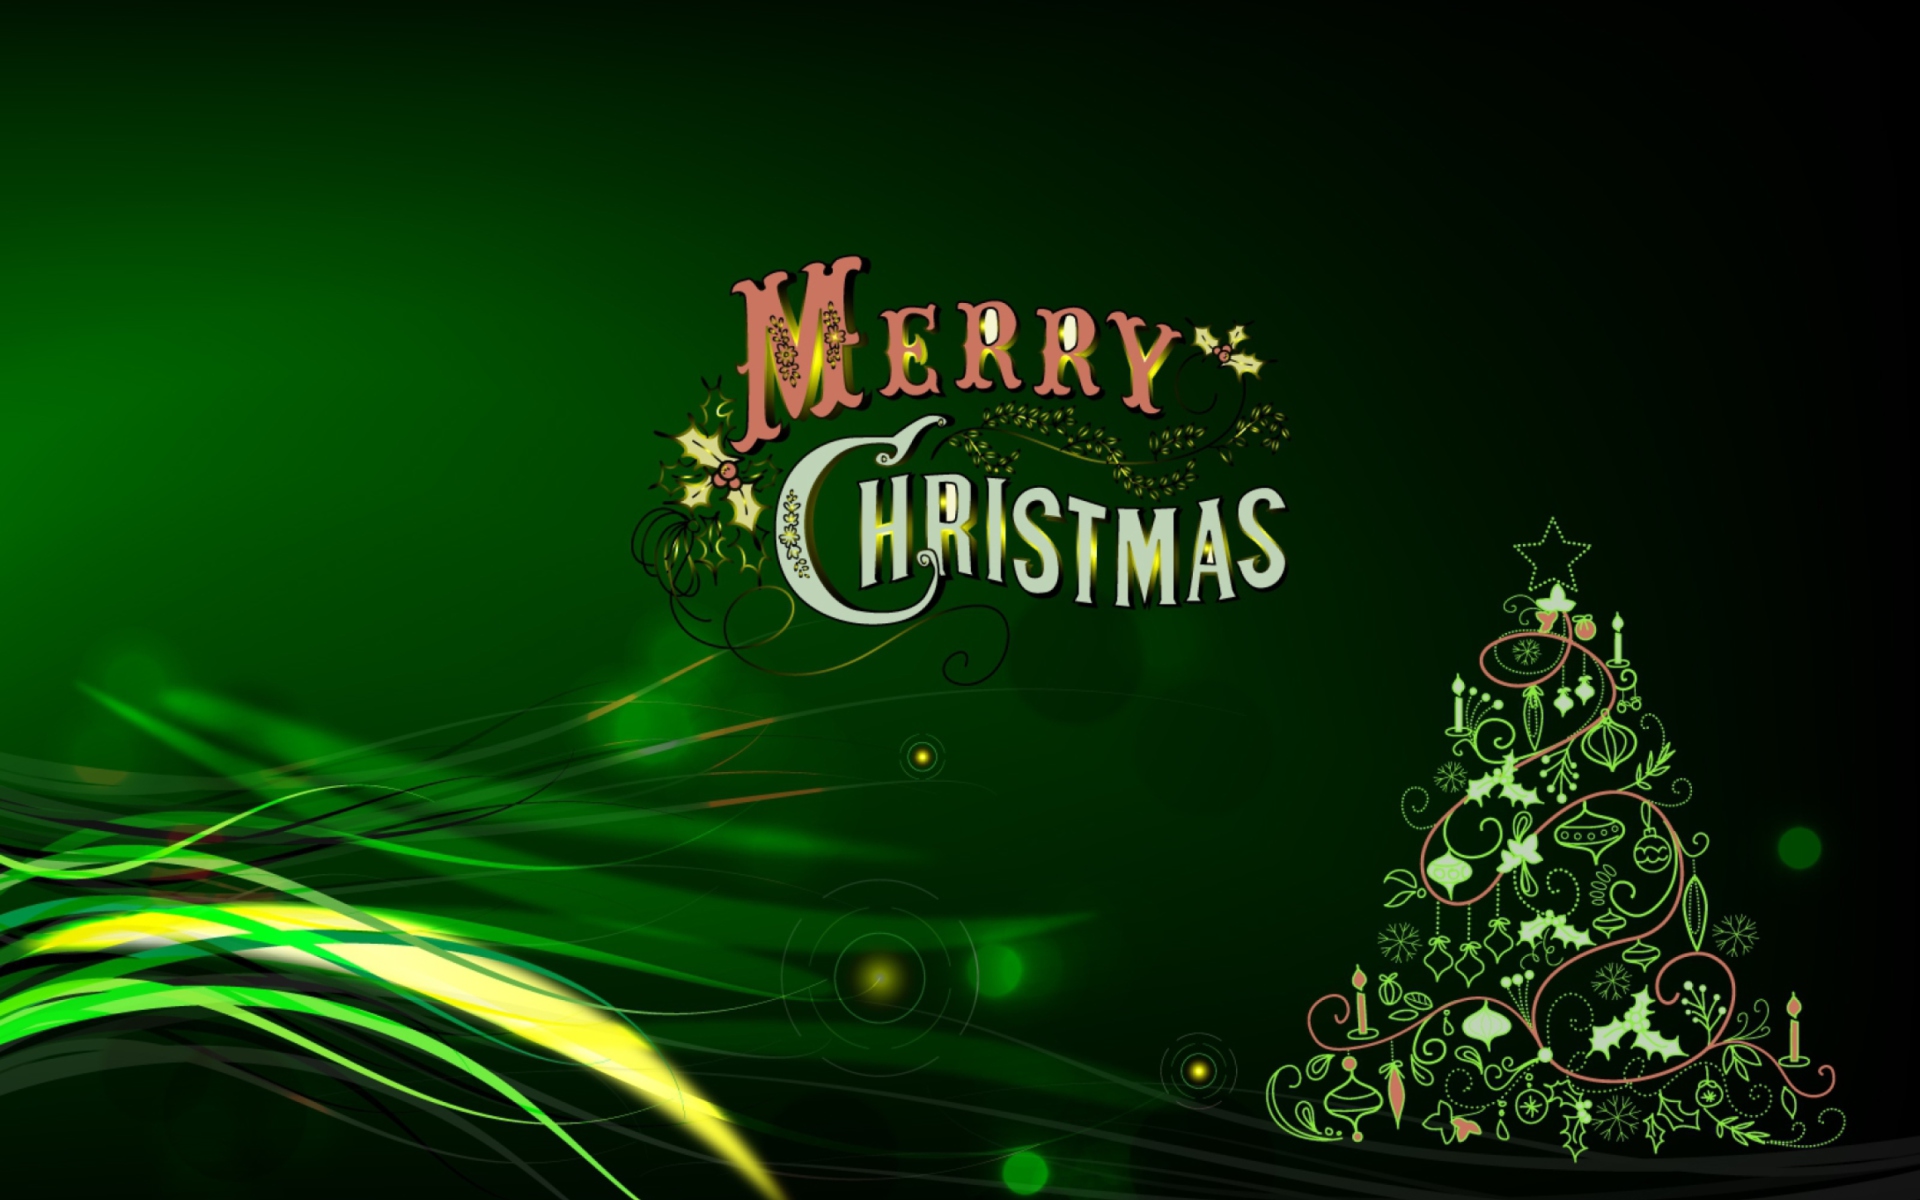 메리 크리스마스 풀 hd 벽지,초록,크리스마스 트리,나무,크리스마스 장식,폰트